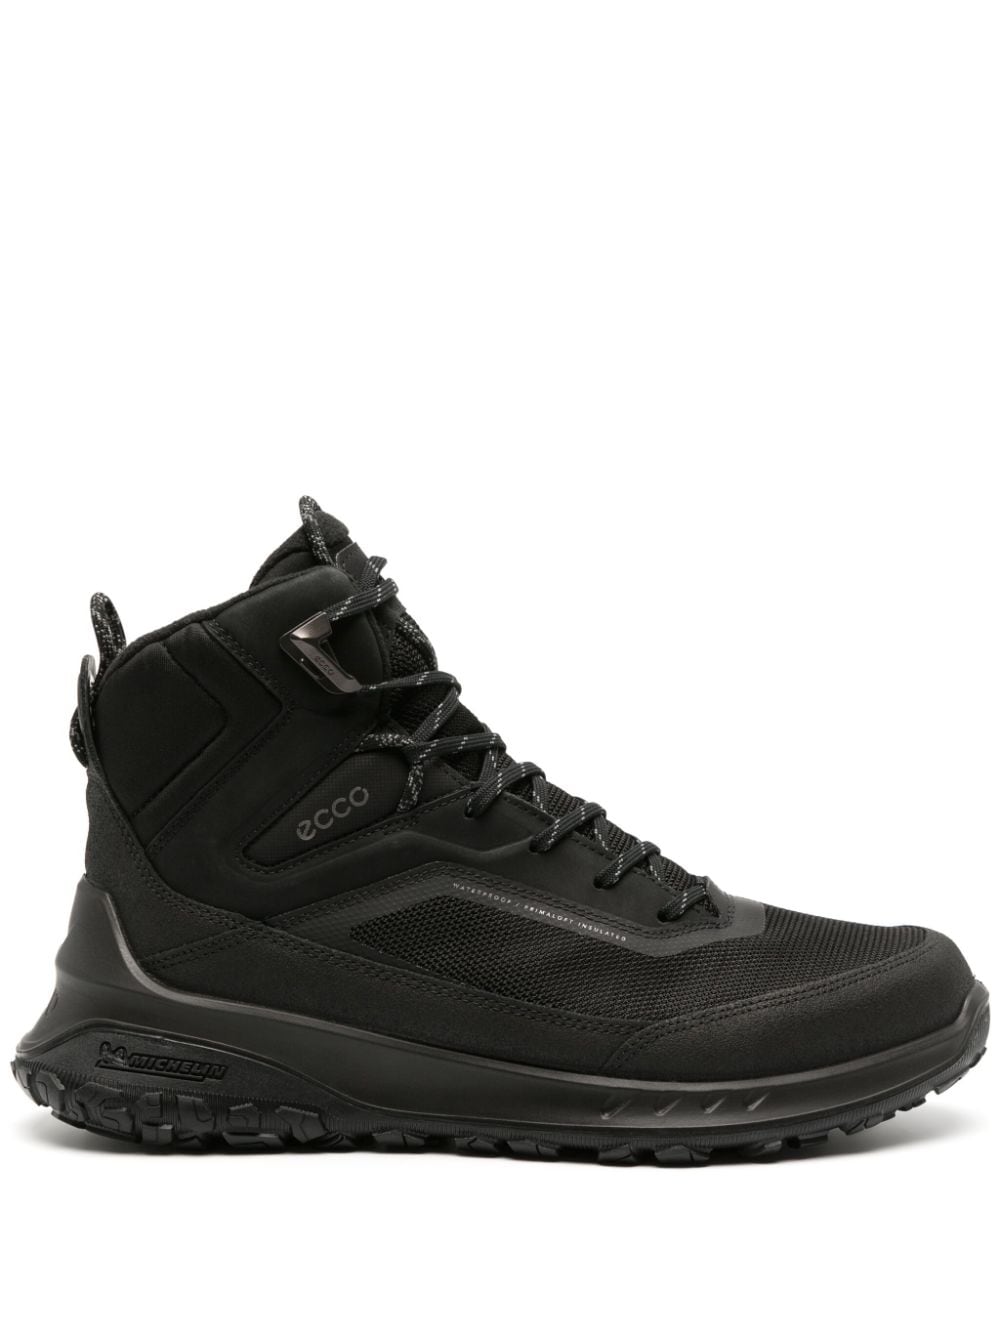 ECCO ULT-TRN leather insulated boots - Black von ECCO